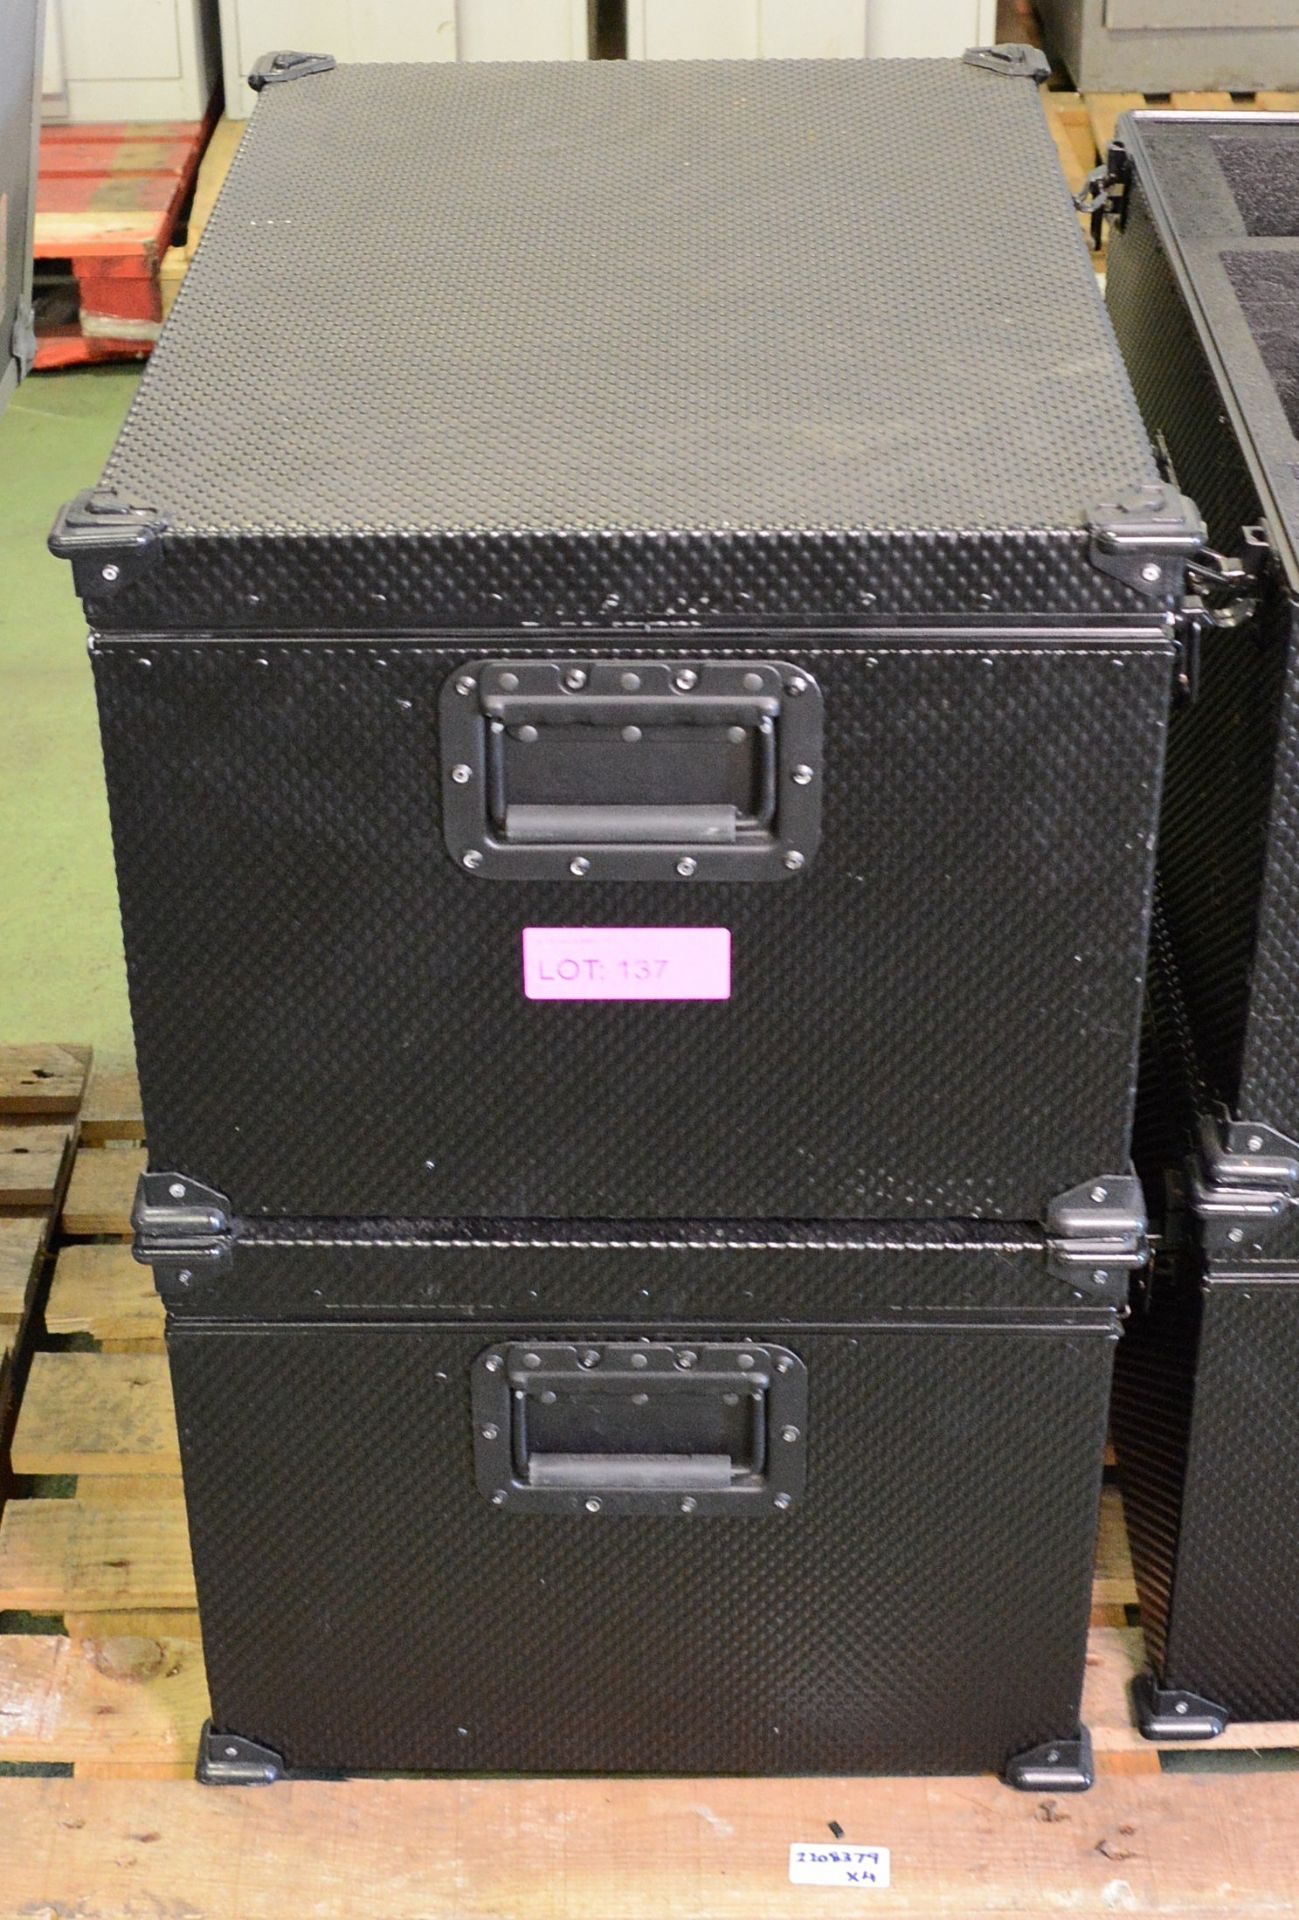 2x Metal Black Boxes L670 x W450 x H360mm.